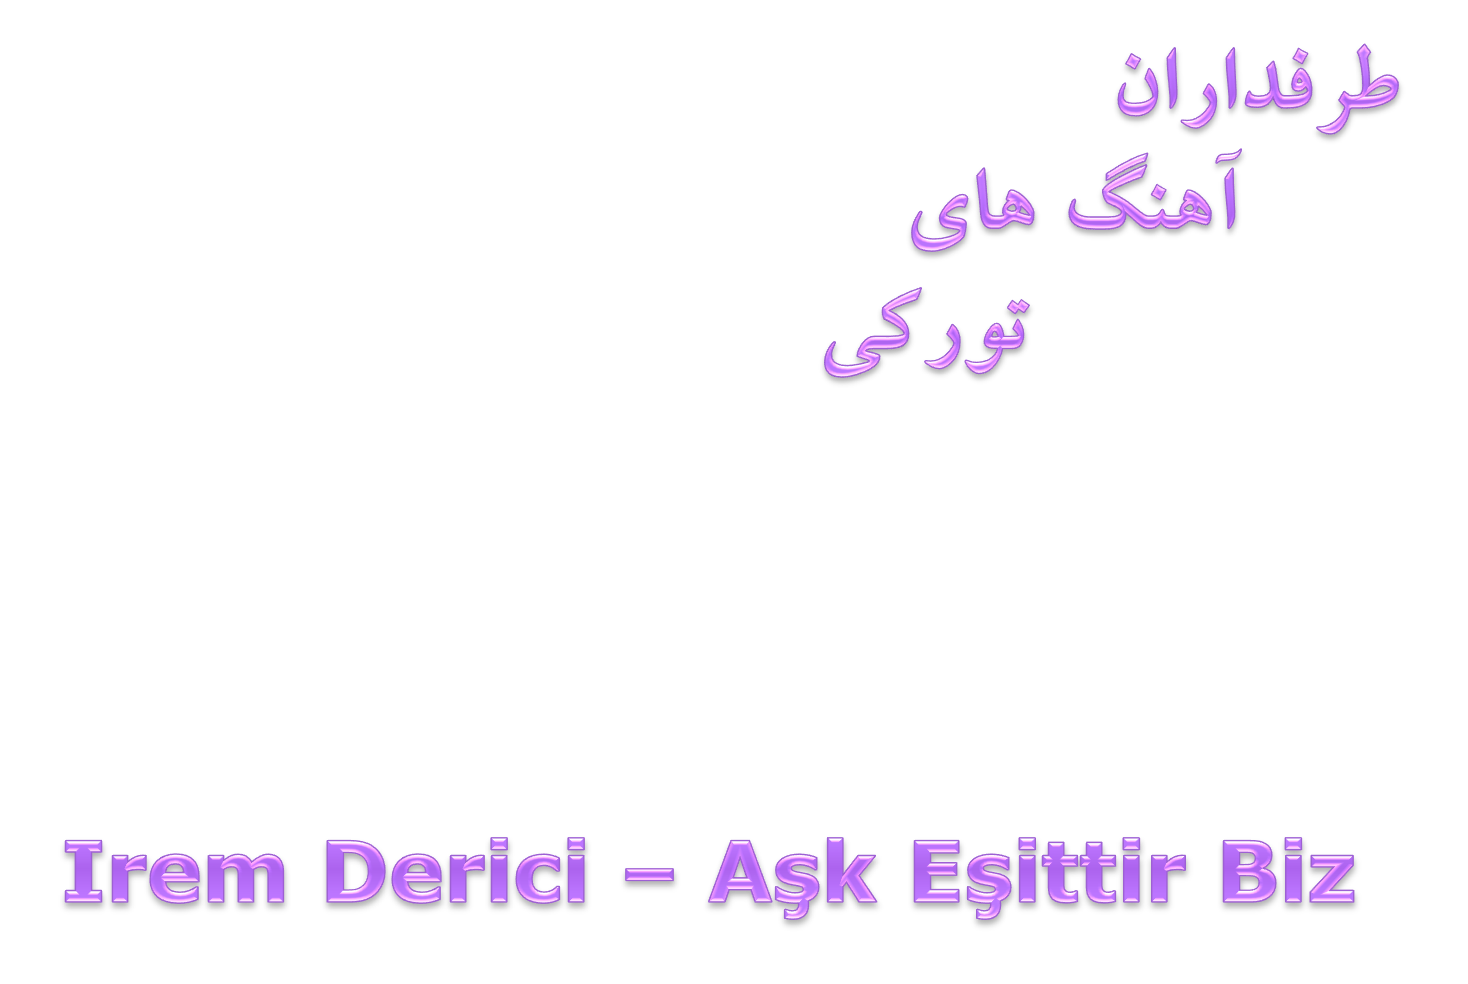 دانلود آهنگ جدید Irem Derici به نام Ask Esittir Biz